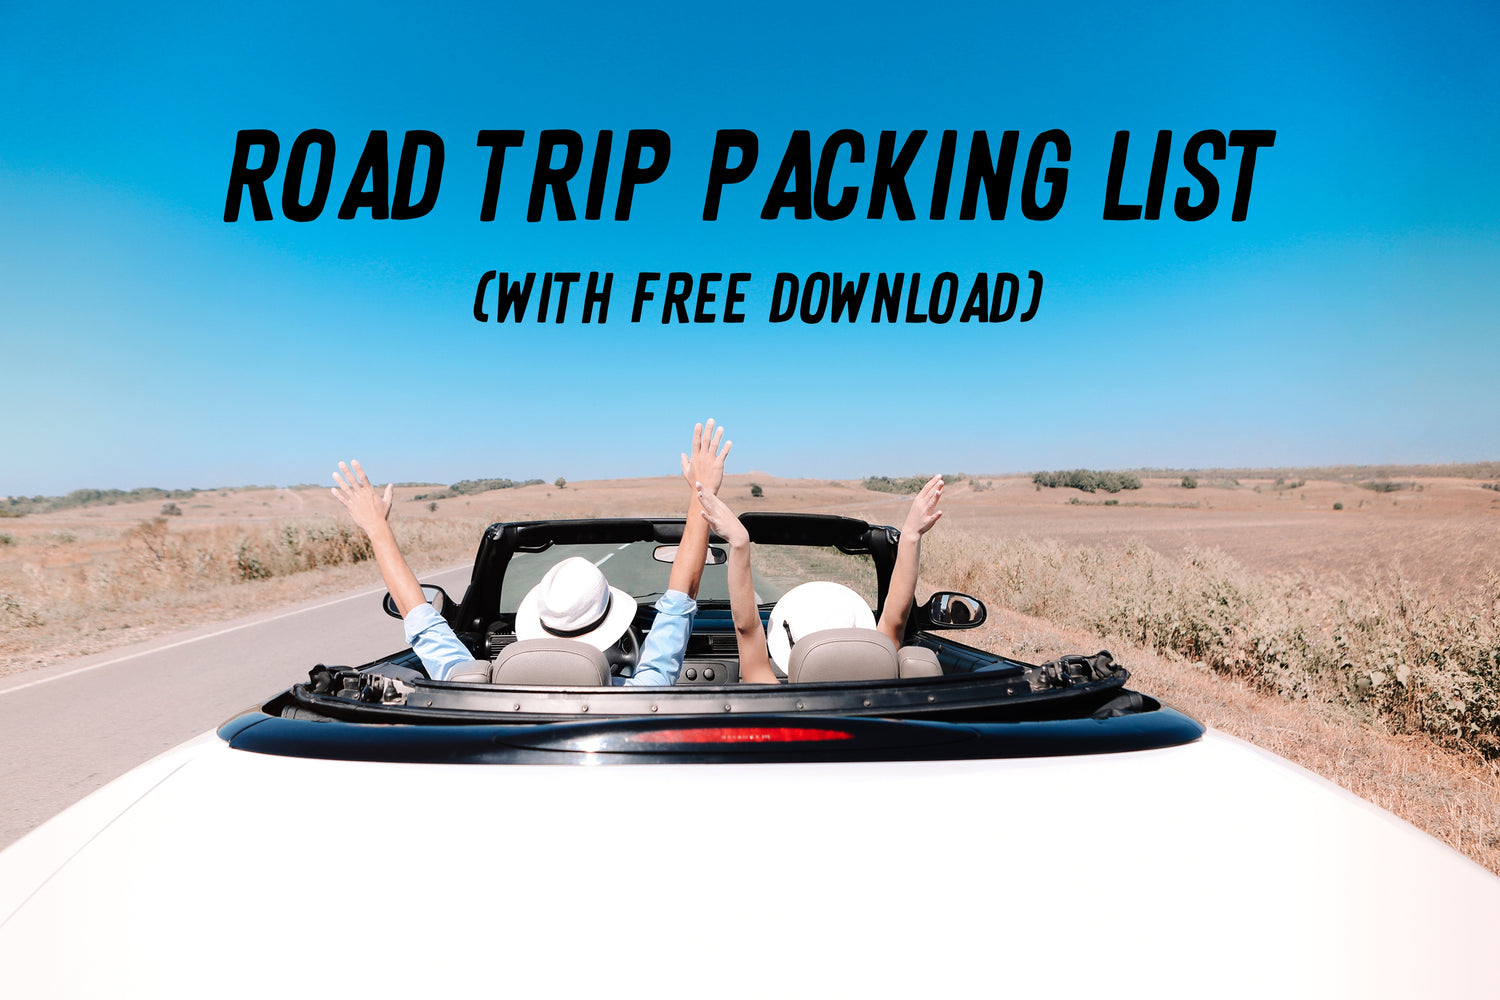 25 Helpful Travel Essentials Checklist That Saved The Day.